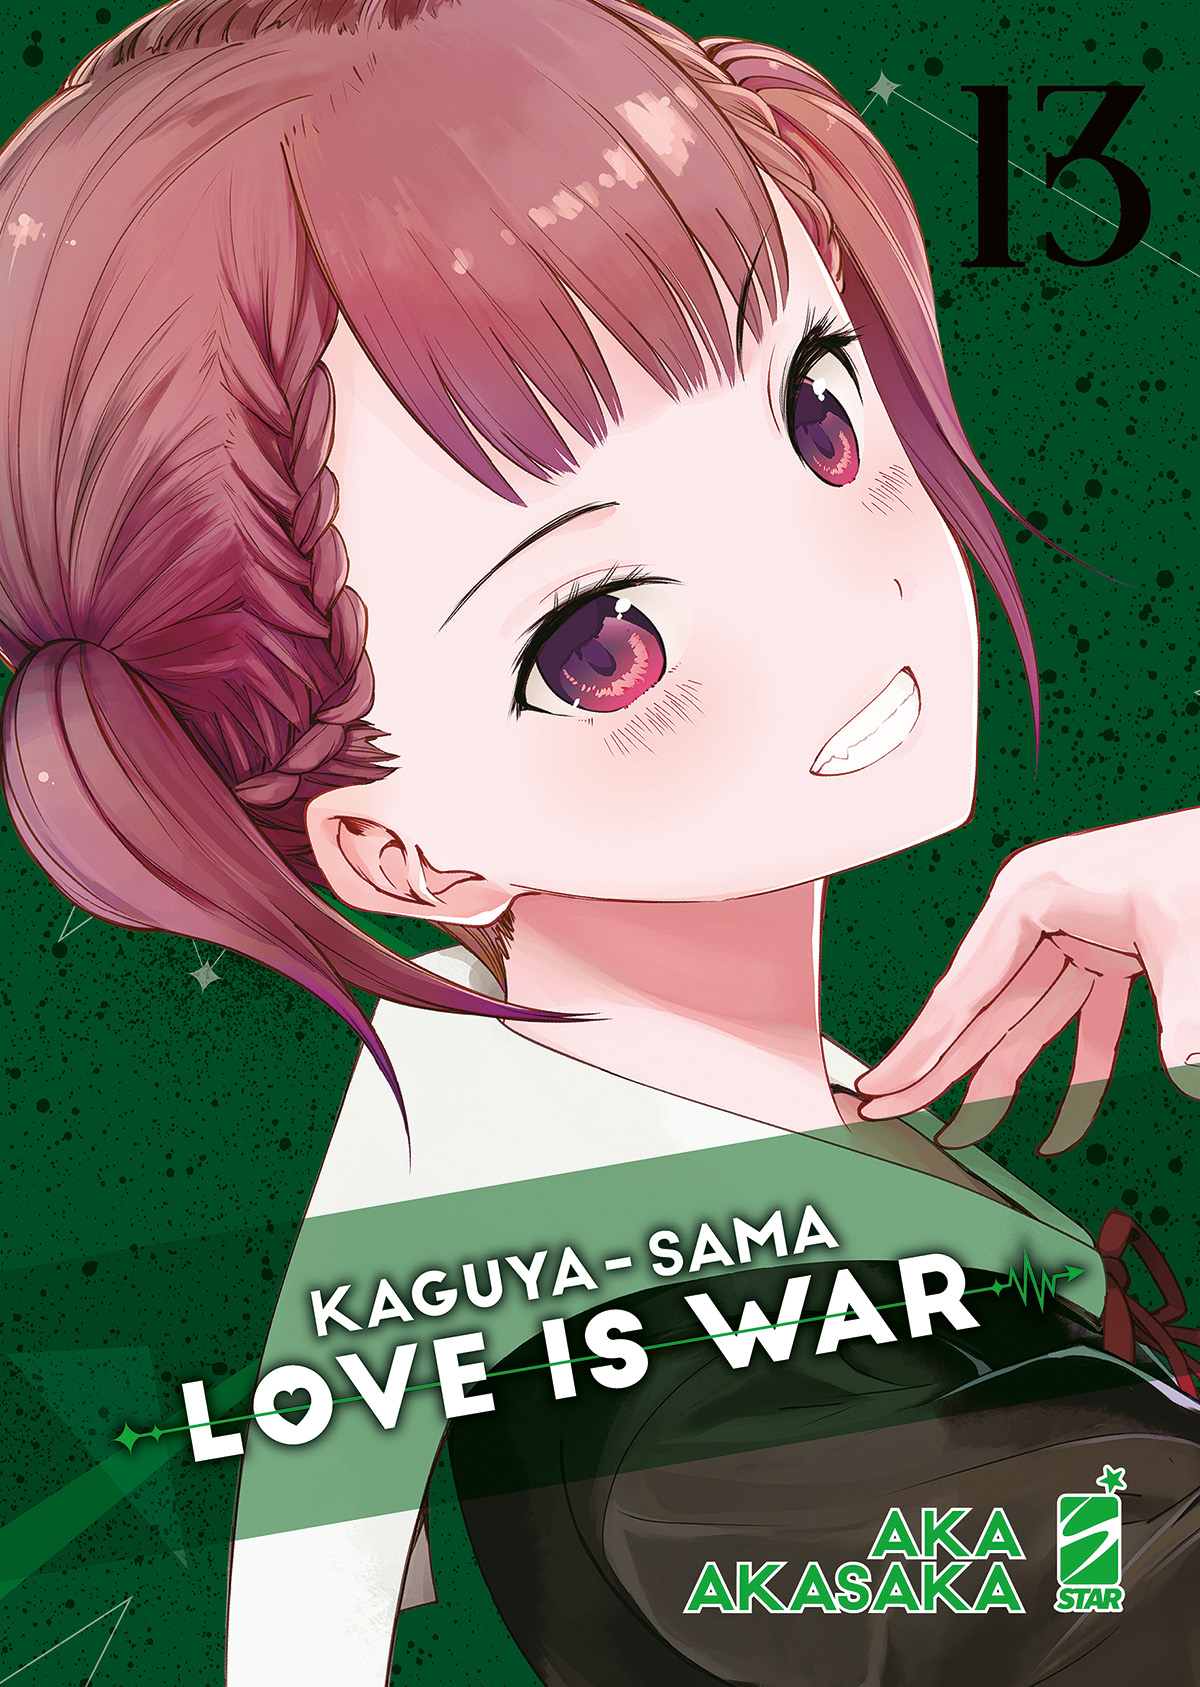 FAN #271 KAGUYA-SAMA LOVE IS WAR N.13